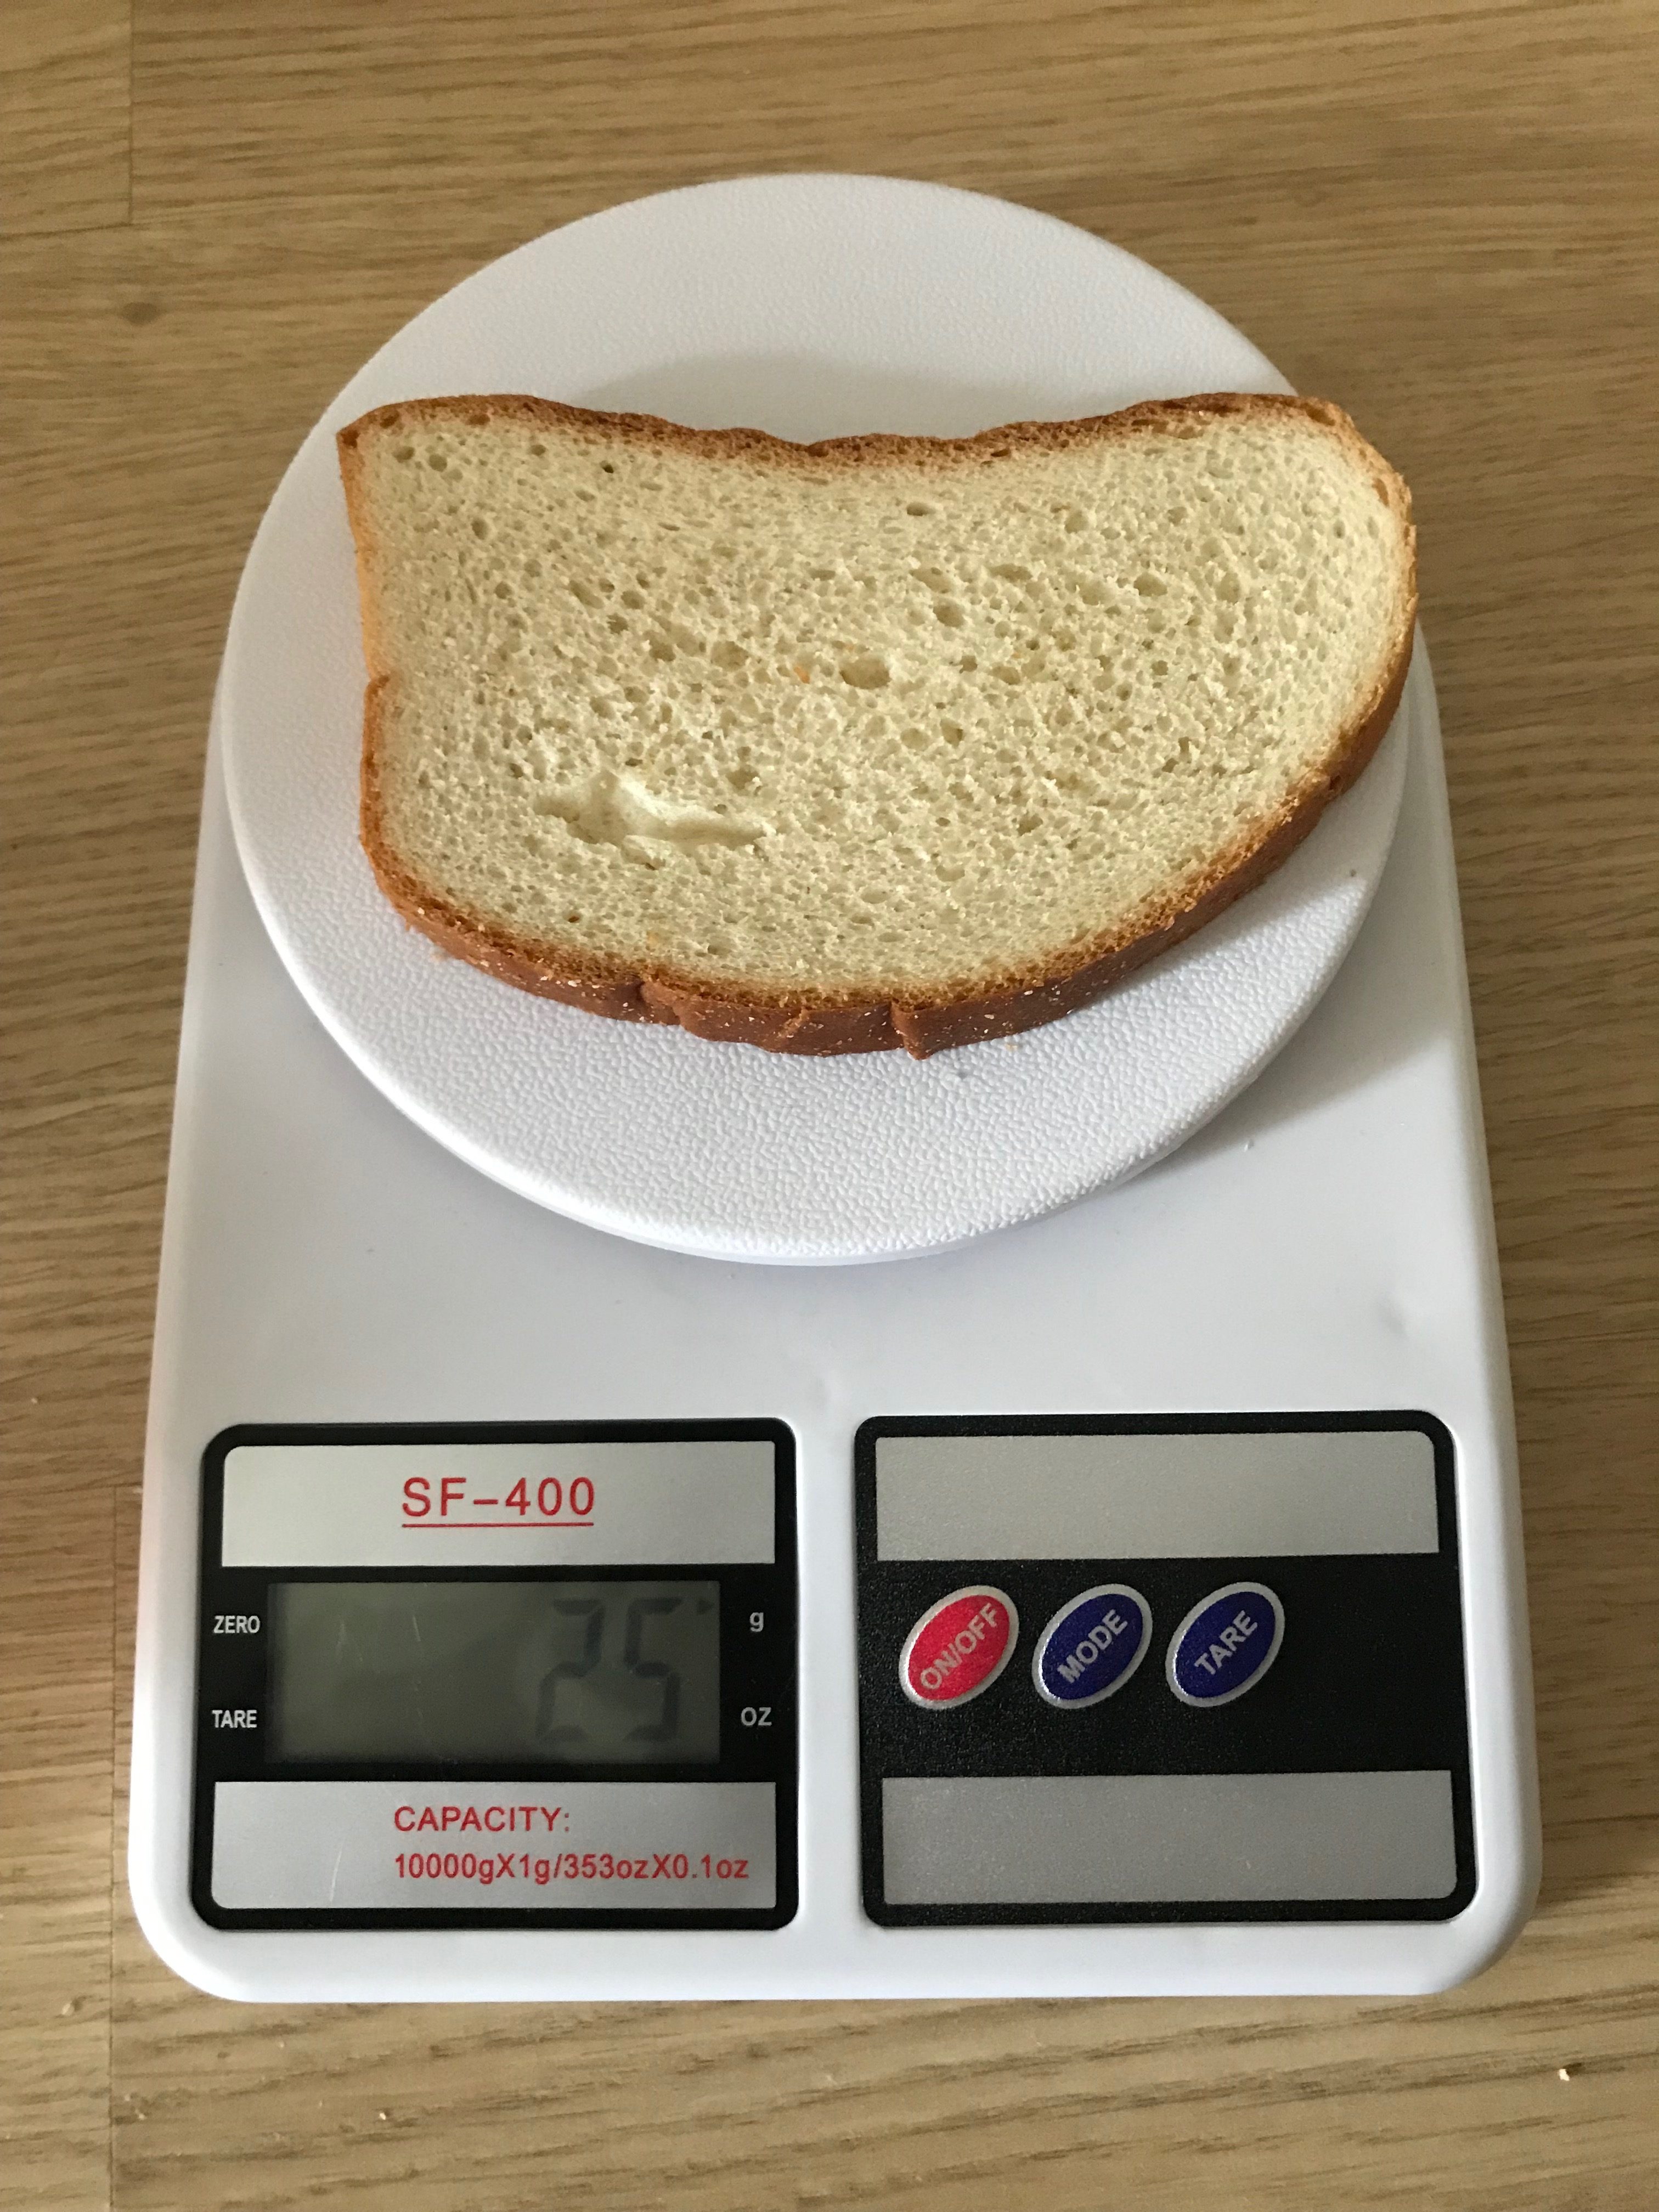 теглото на една филия бял хляб